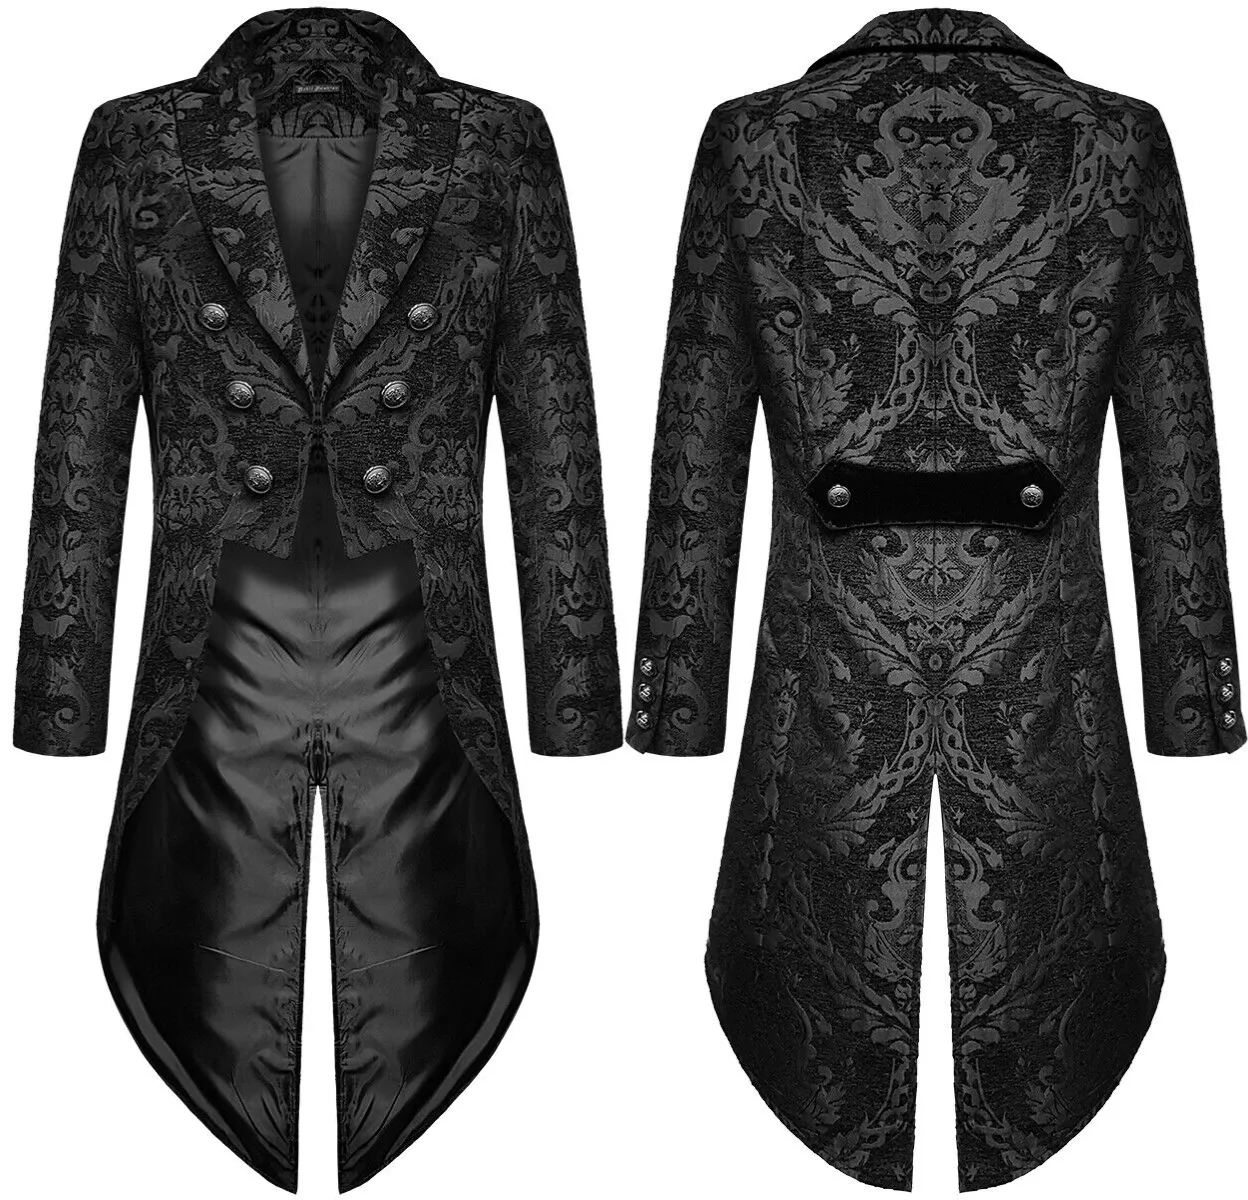 QNPQYX nouveaux Costumes de Cosplay mode diable hommes gothique Steampunk veste de queue noir brocart damassé mariage